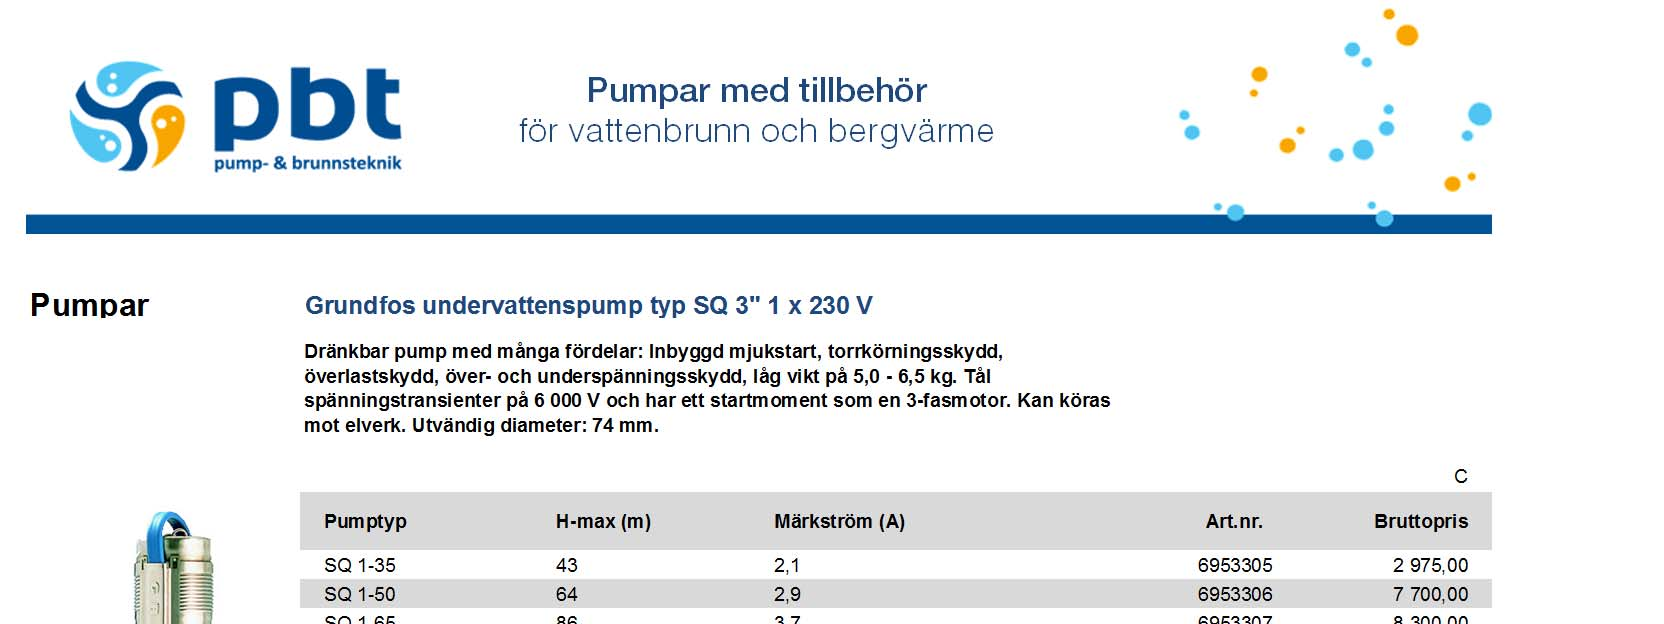 Pumpar Grundfos undervattenspump typ SQ 3" 1 x 230 V Dränkbar pump med många fördelar: Inbyggd mjukstart, torrkörningsskydd, överlastskydd, över- och underspänningsskydd, låg vikt på 5,0-6,5 kg.